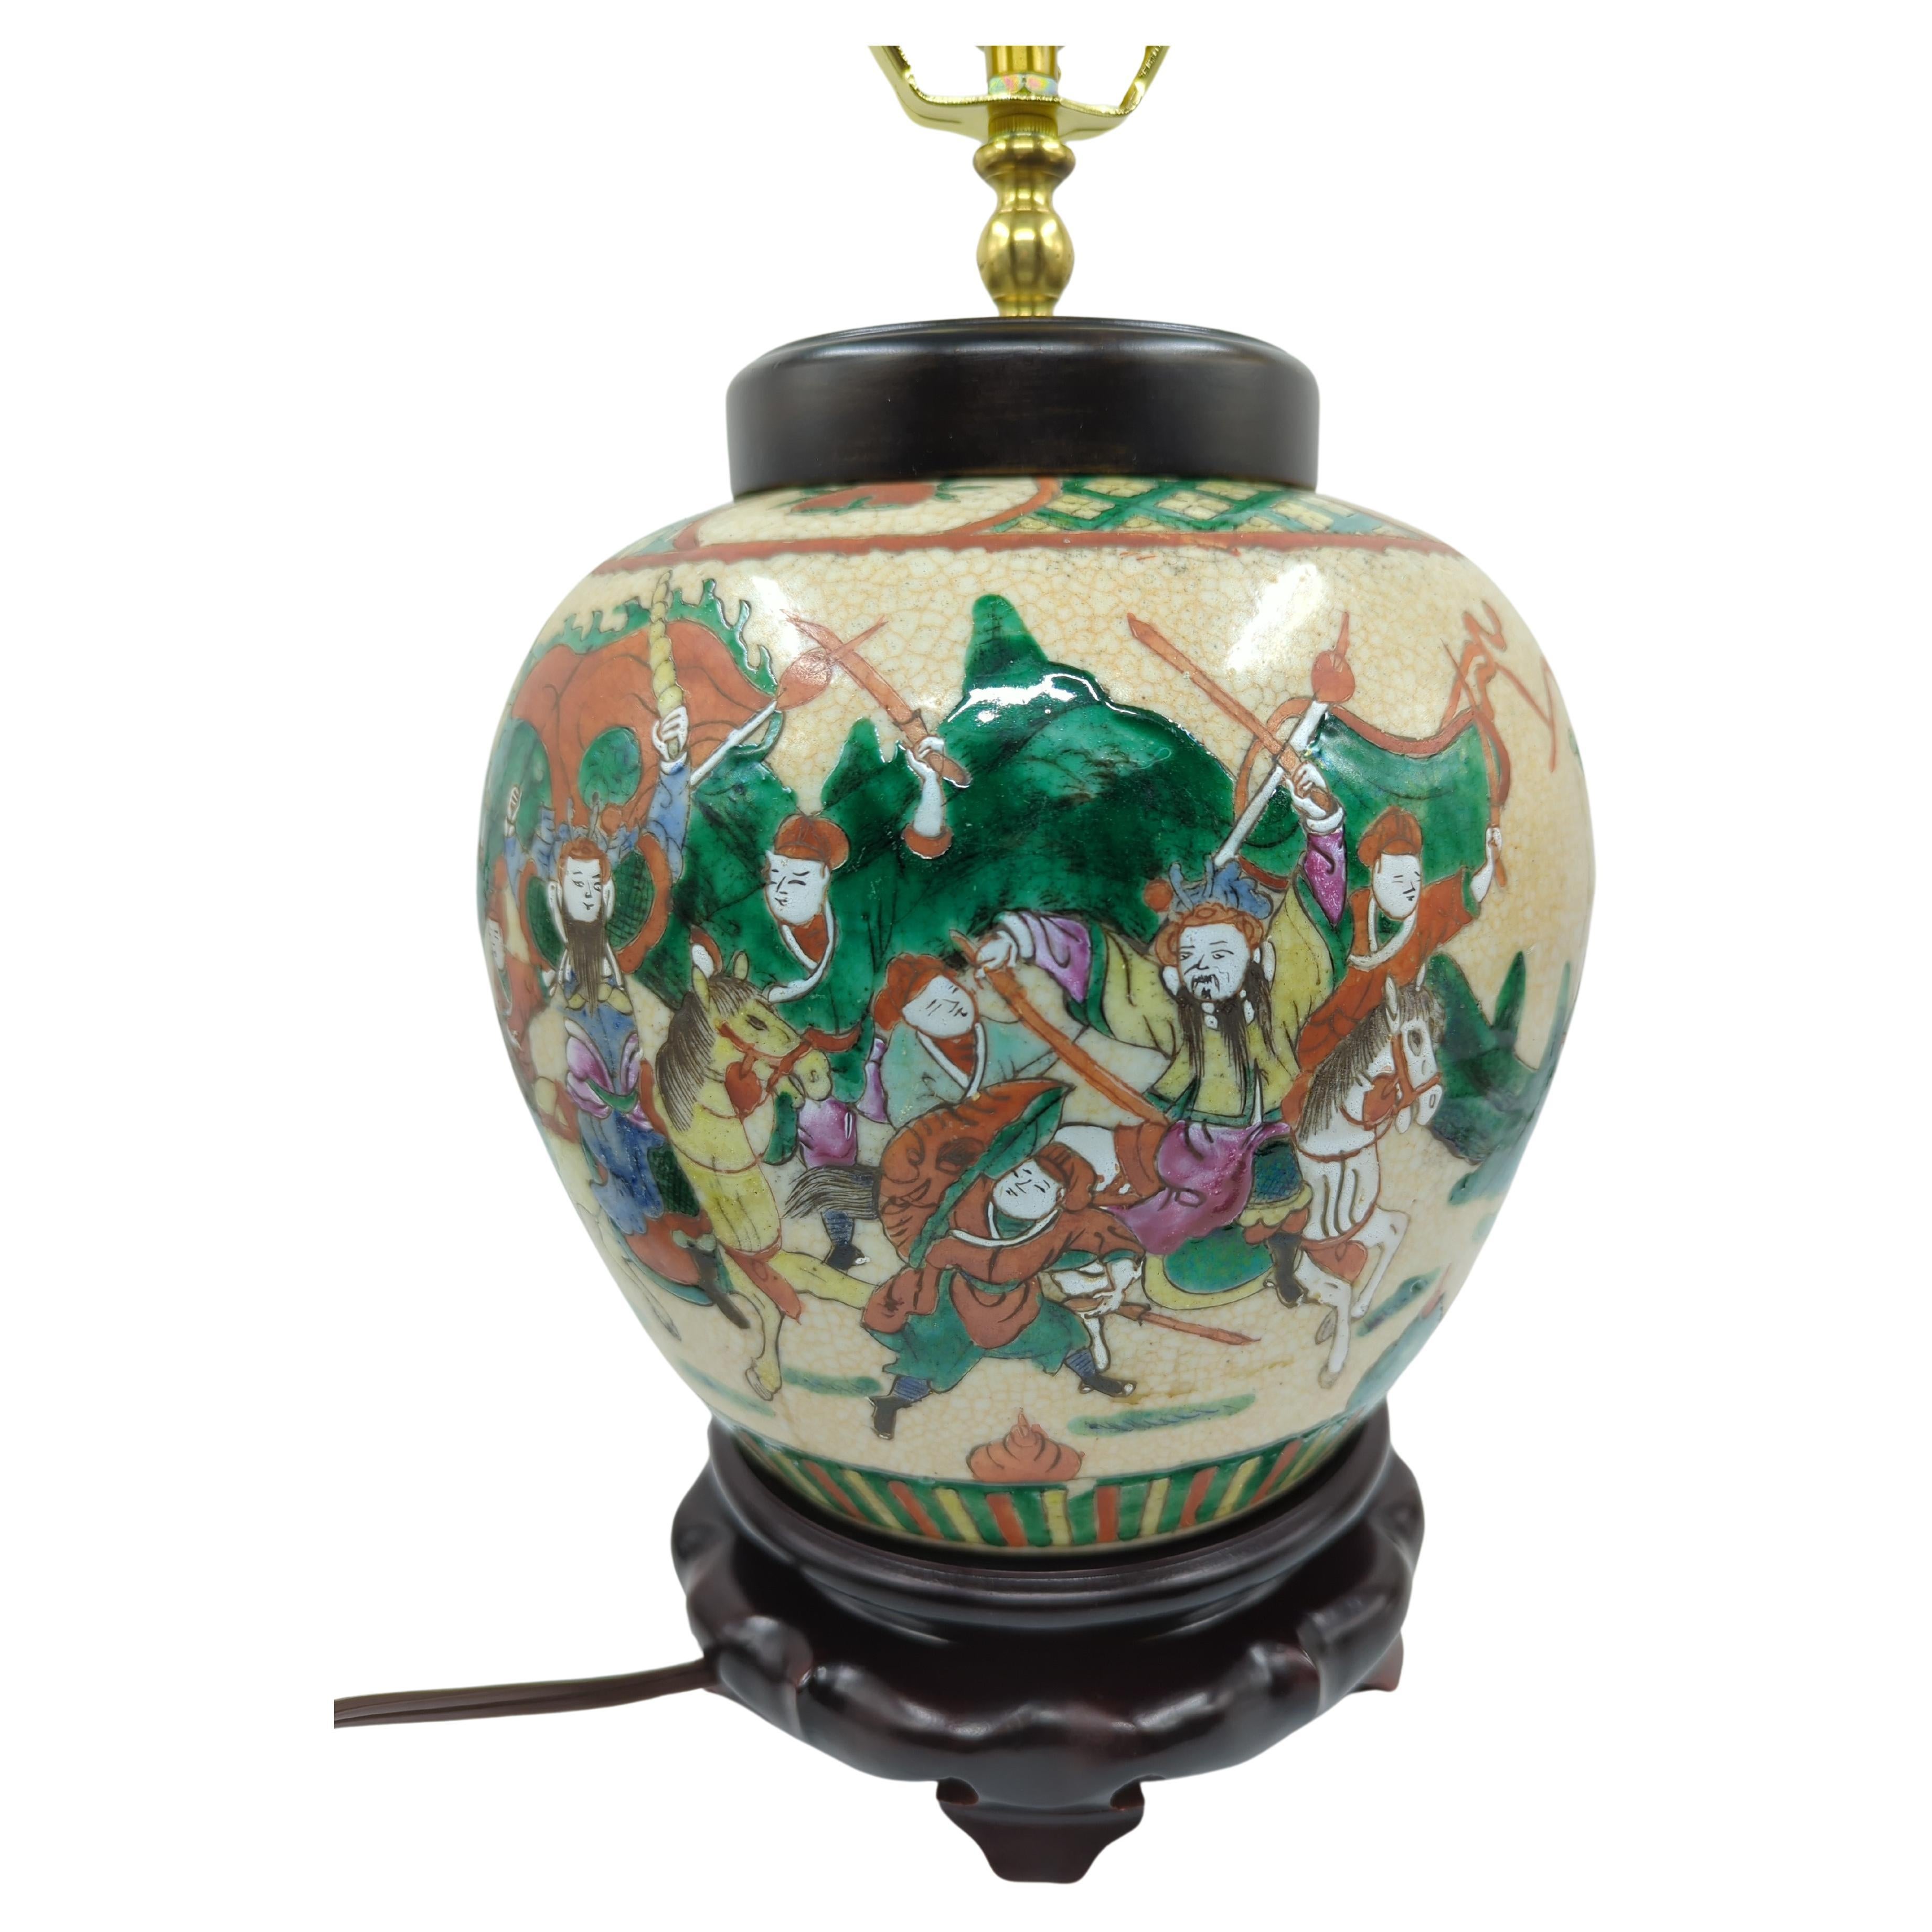 Vase ovoïde en porcelaine chinoise vintage à glaçure craquelée de style Nankin, décoré en famille rose de figures de guerriers dans une scène de bataille, électrifié et transformé en lampe sur un socle en bois.

Prise E26
Taille totale :  H : 17